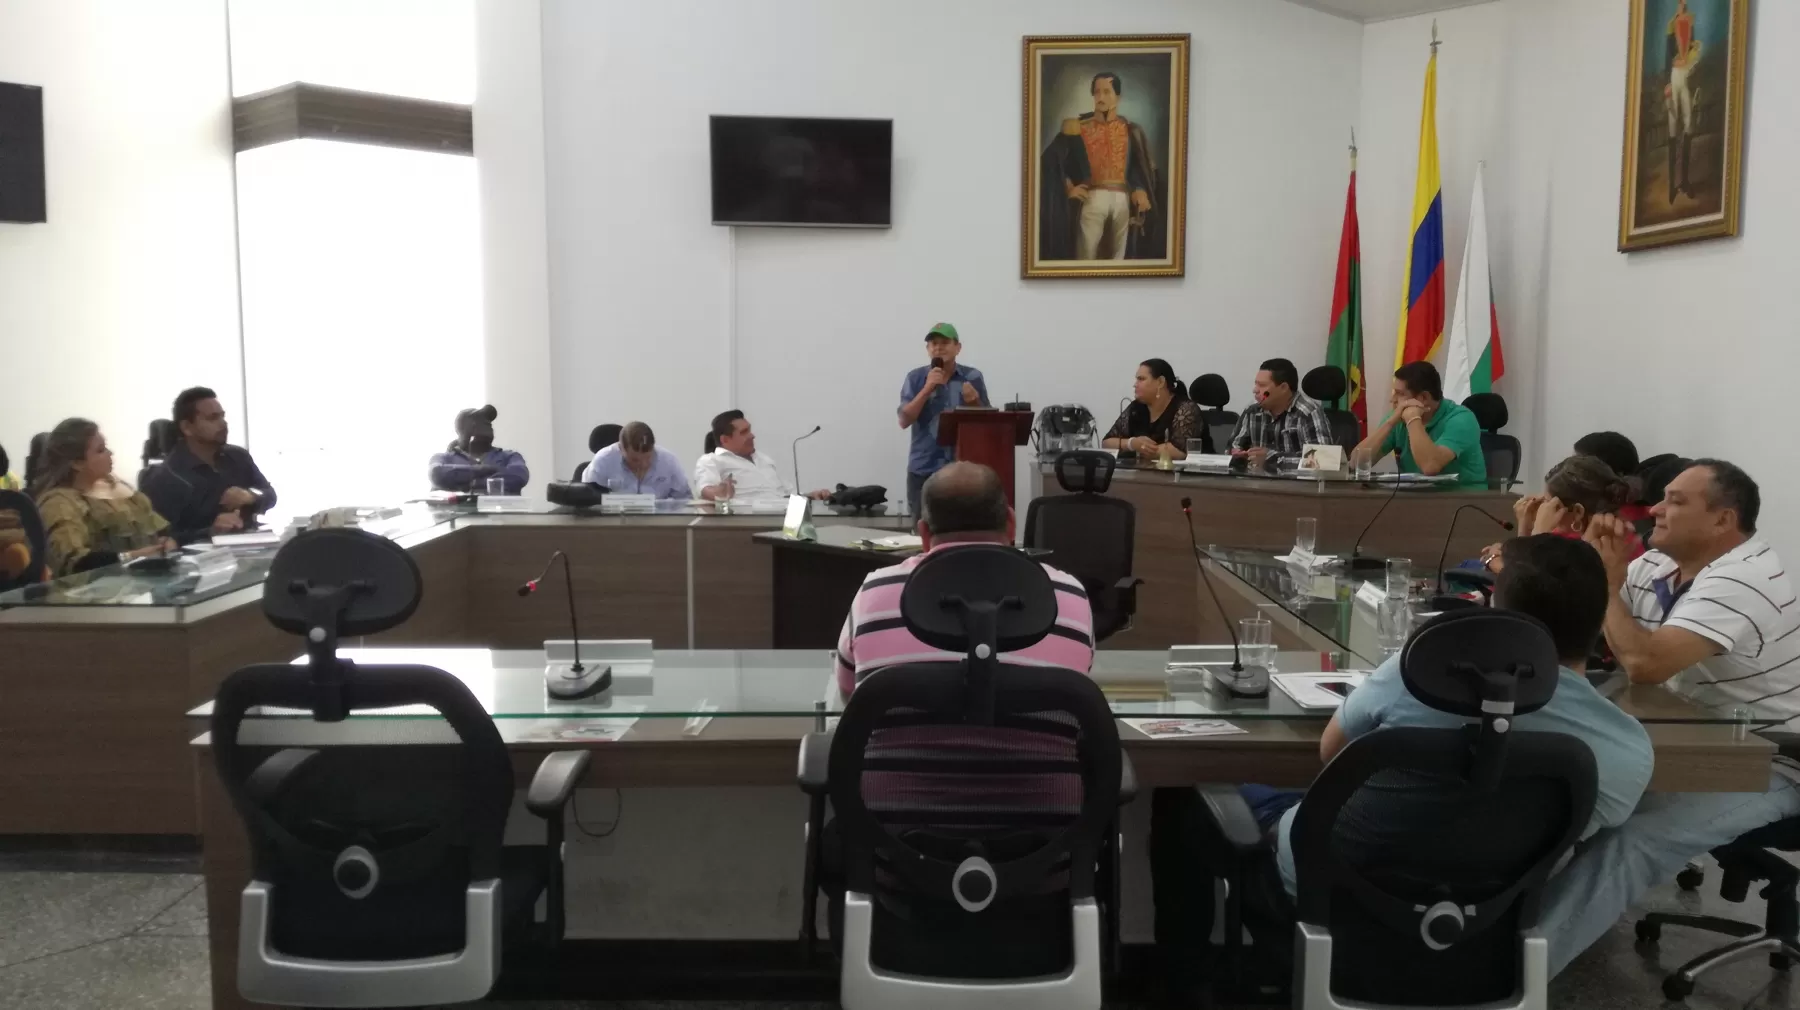 Gestores culturales de Arauca denuncian la falta de recursos para programas  culturales en el municipio de Arauca. El dinero lo han invertido en pagar deudas